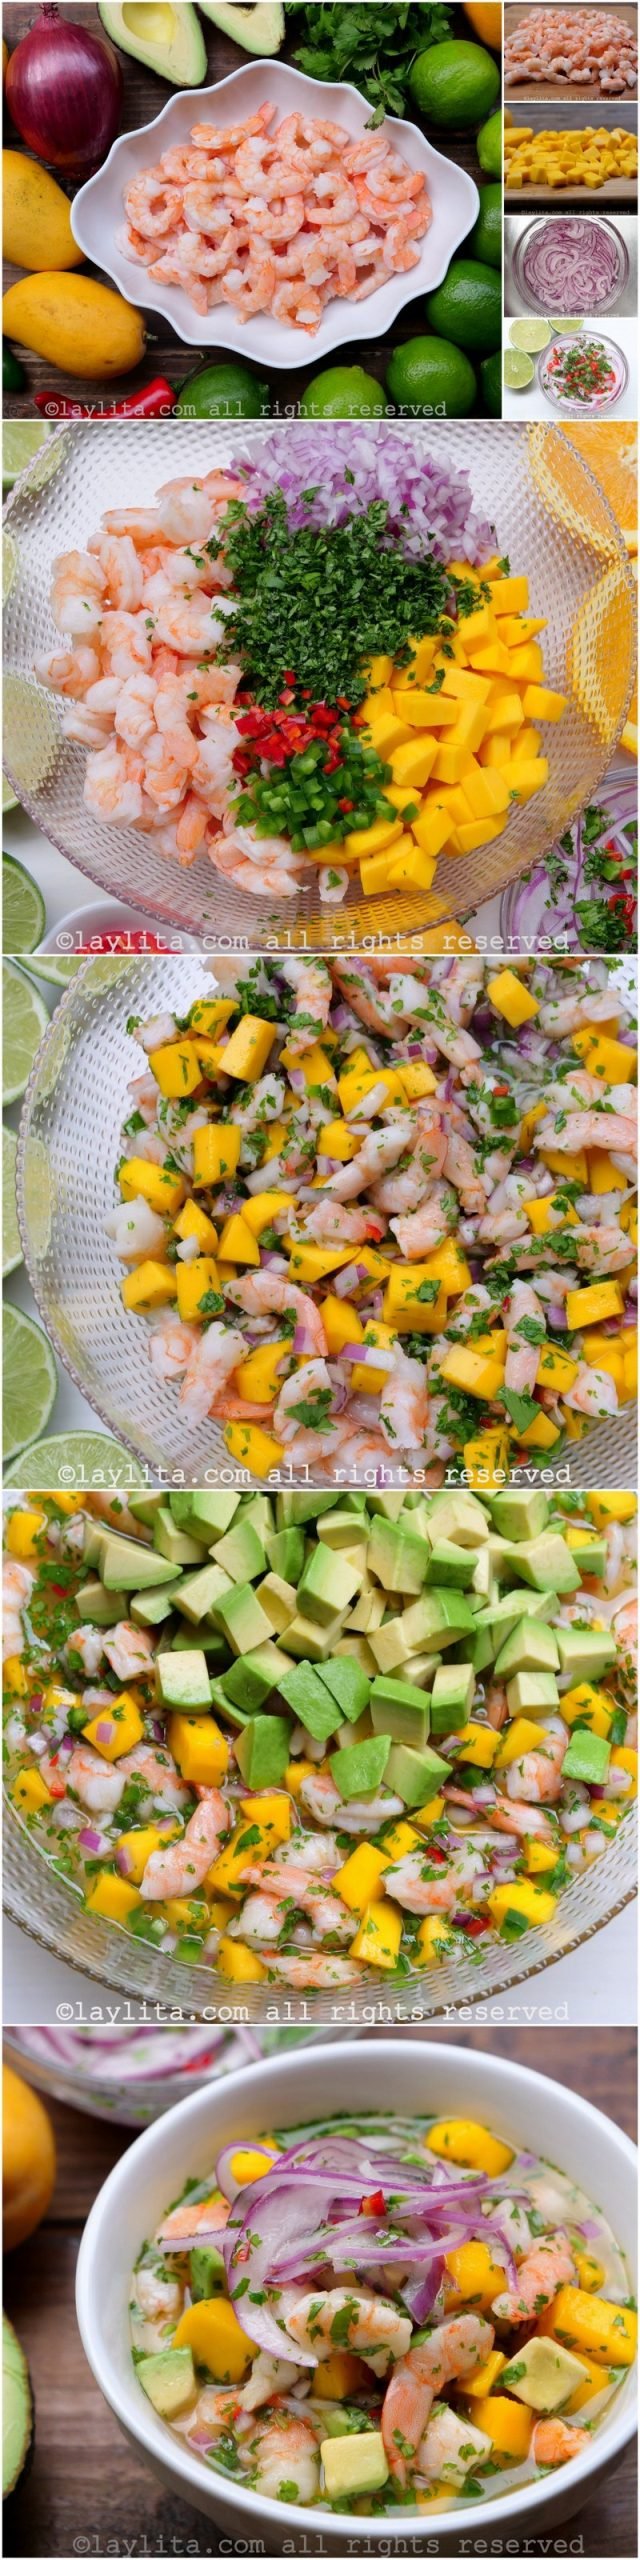 Fotos do passo a passo da preparação do ceviche de manga e camarão com abacate